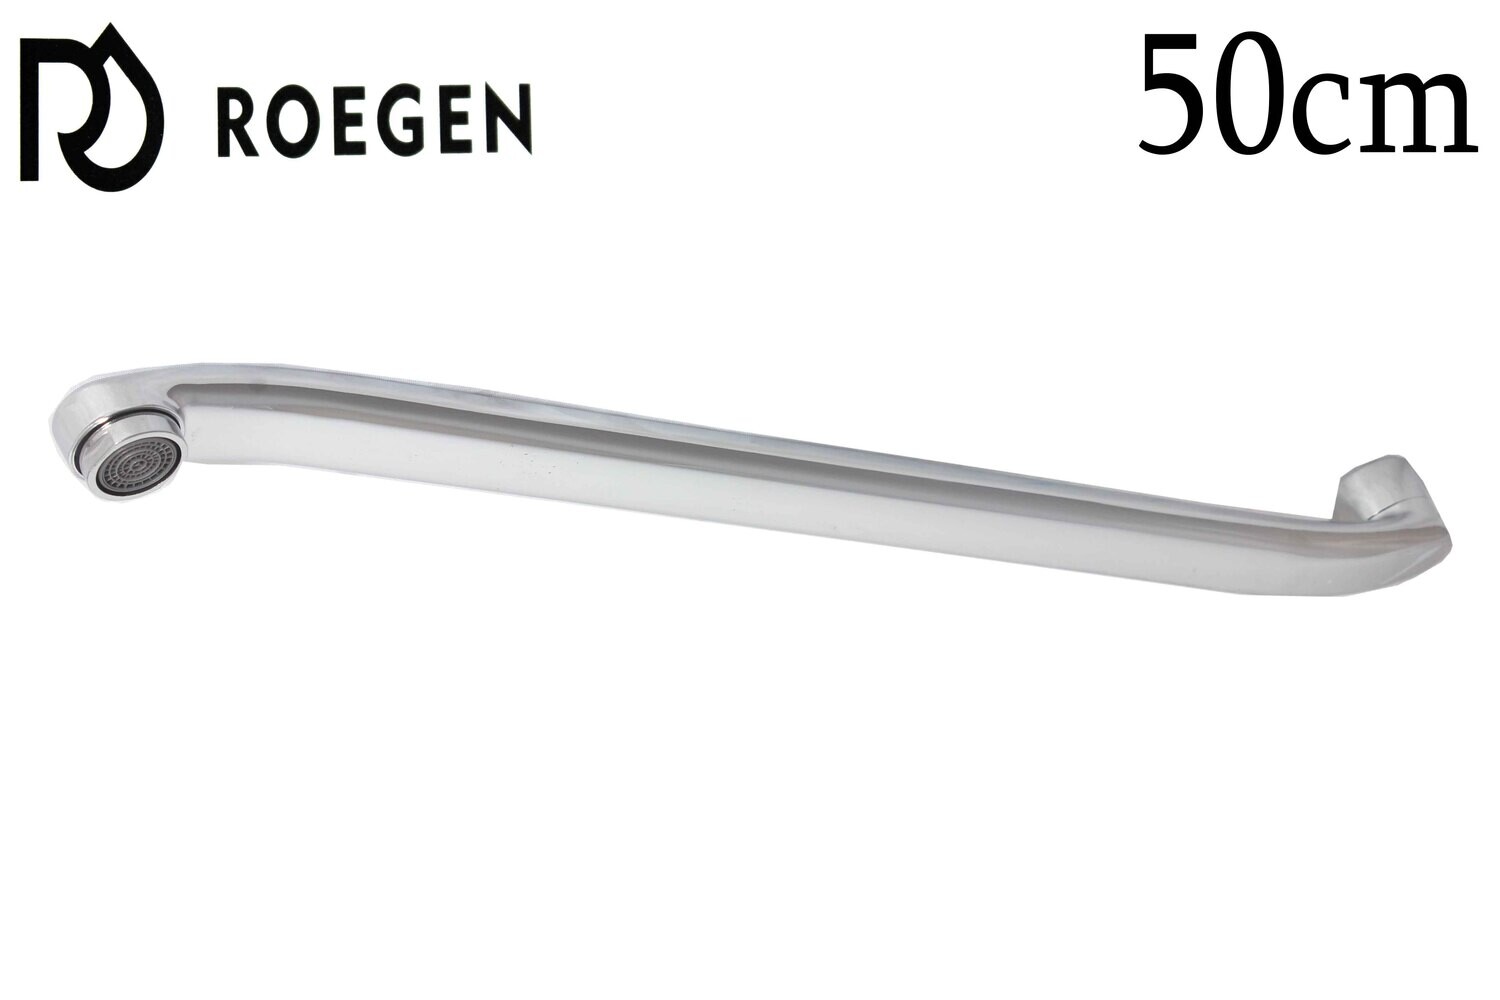 RZ-BC-50 Ծորակի քիթ L 50սմ տափակ ուղիղ ROEGEN